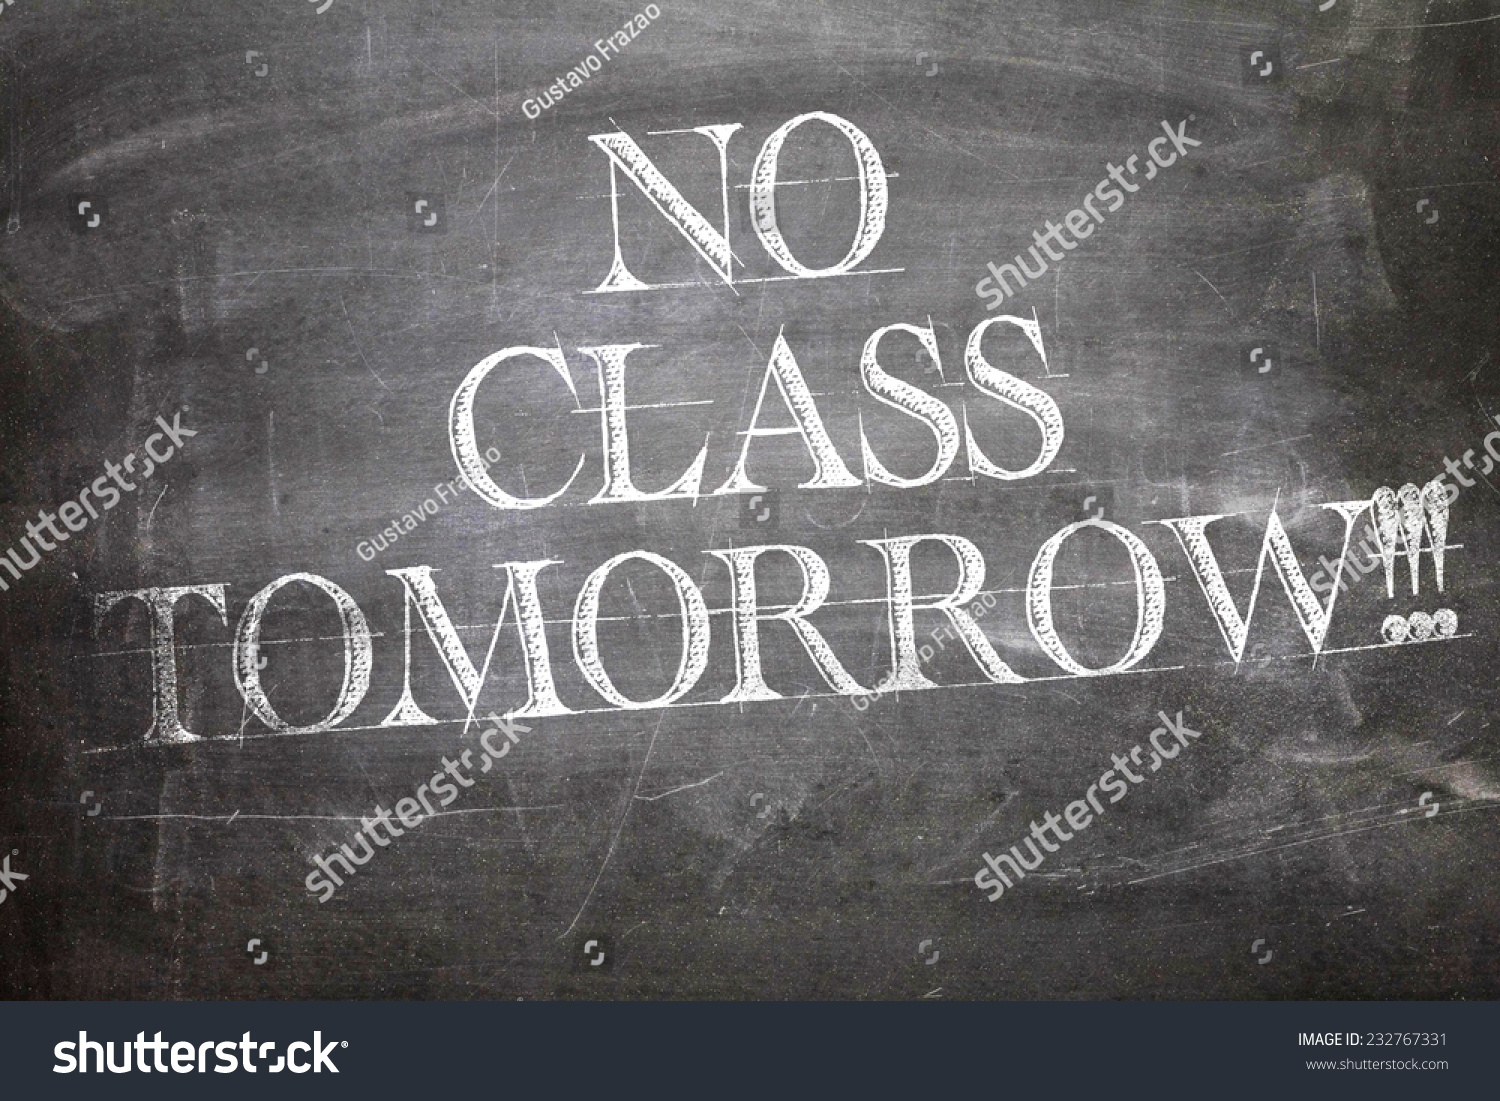 no-class-tomorrow-written-on-blackboard-stock-photo-232767331-shutterstock